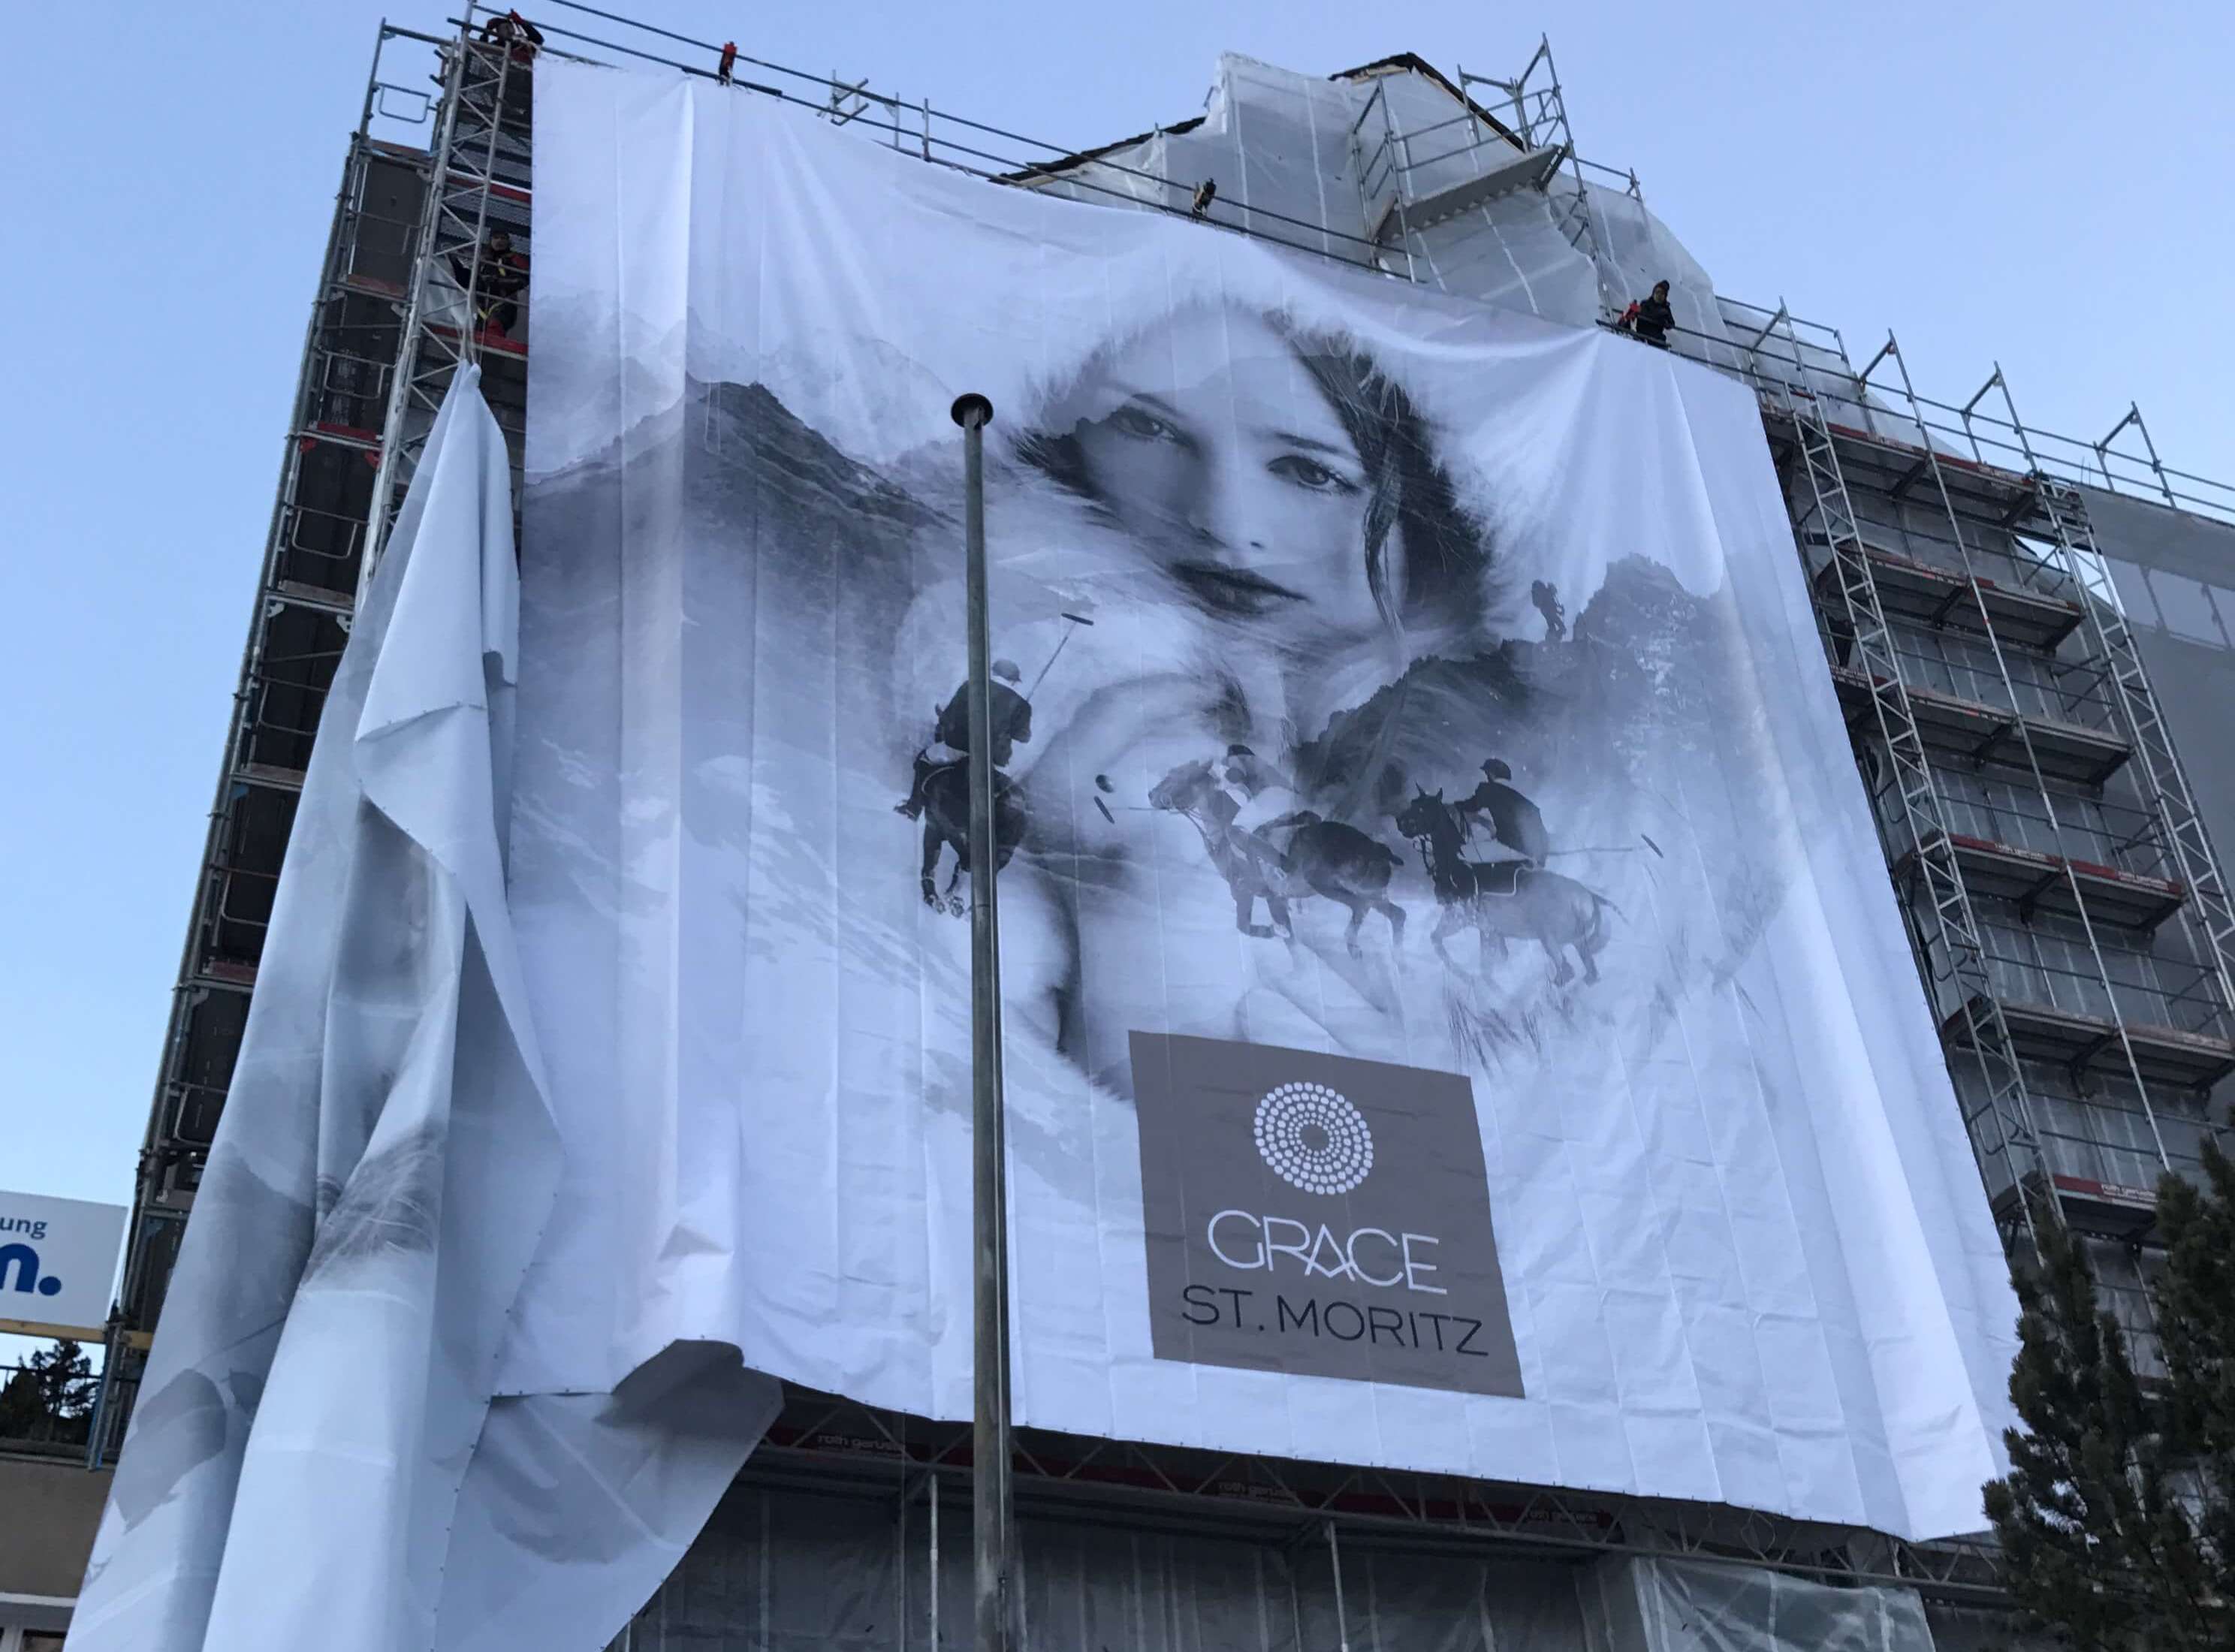 Hotel Grace <br> St.Moritz<br>die Blache wird montiert<br>Dezember 2016